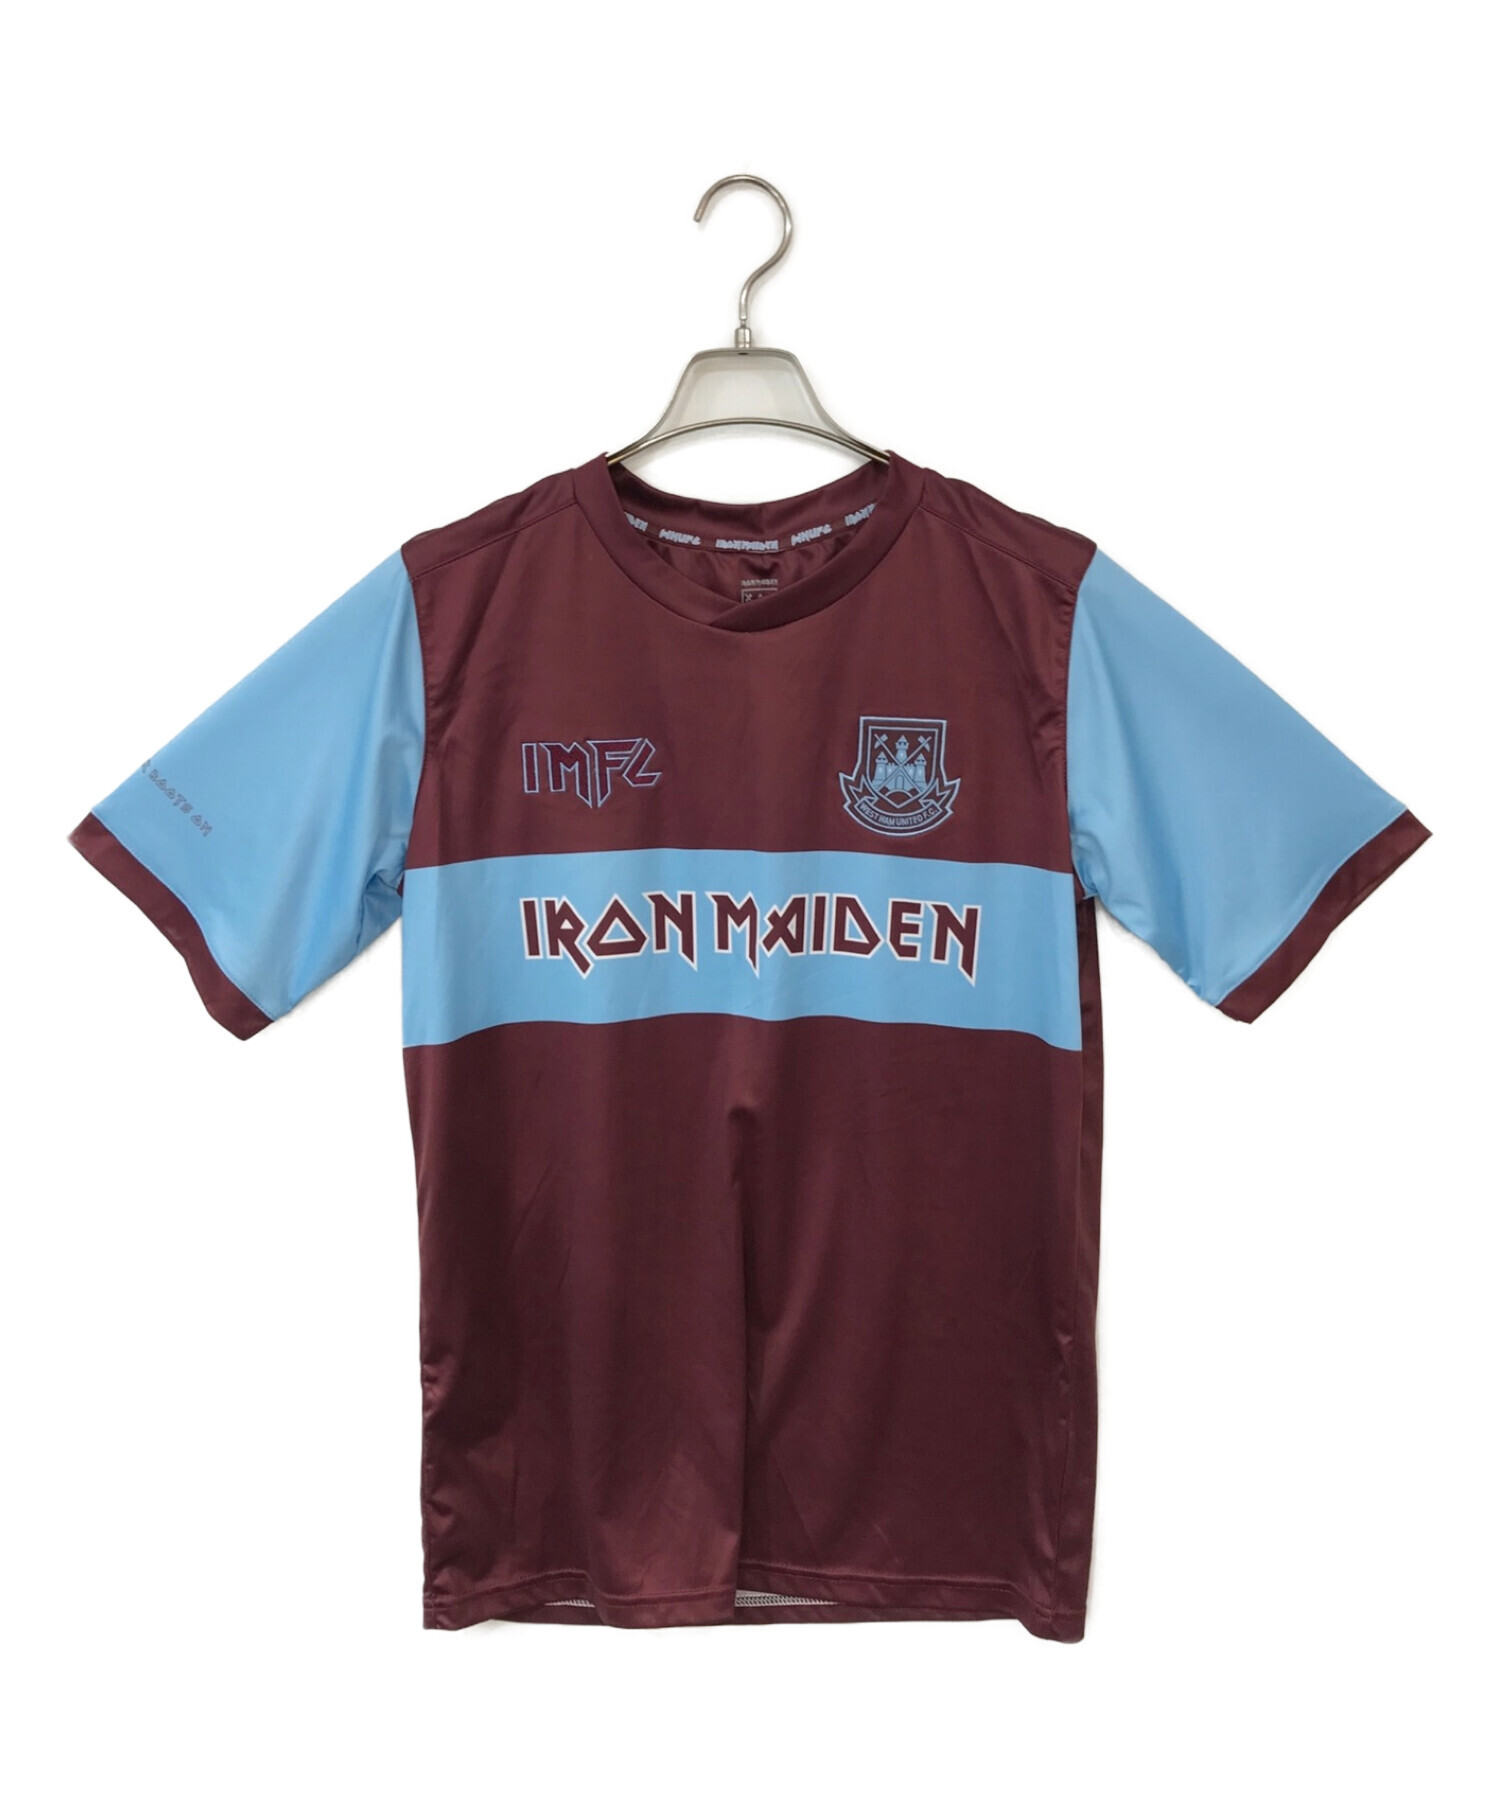 IRON MAIDEN (アイアンメイデン) WEST HAM UNITED FC (ウェストハム・ユナイテッドFC) ゲームシャツ ボルドー×ブルー  サイズ:M